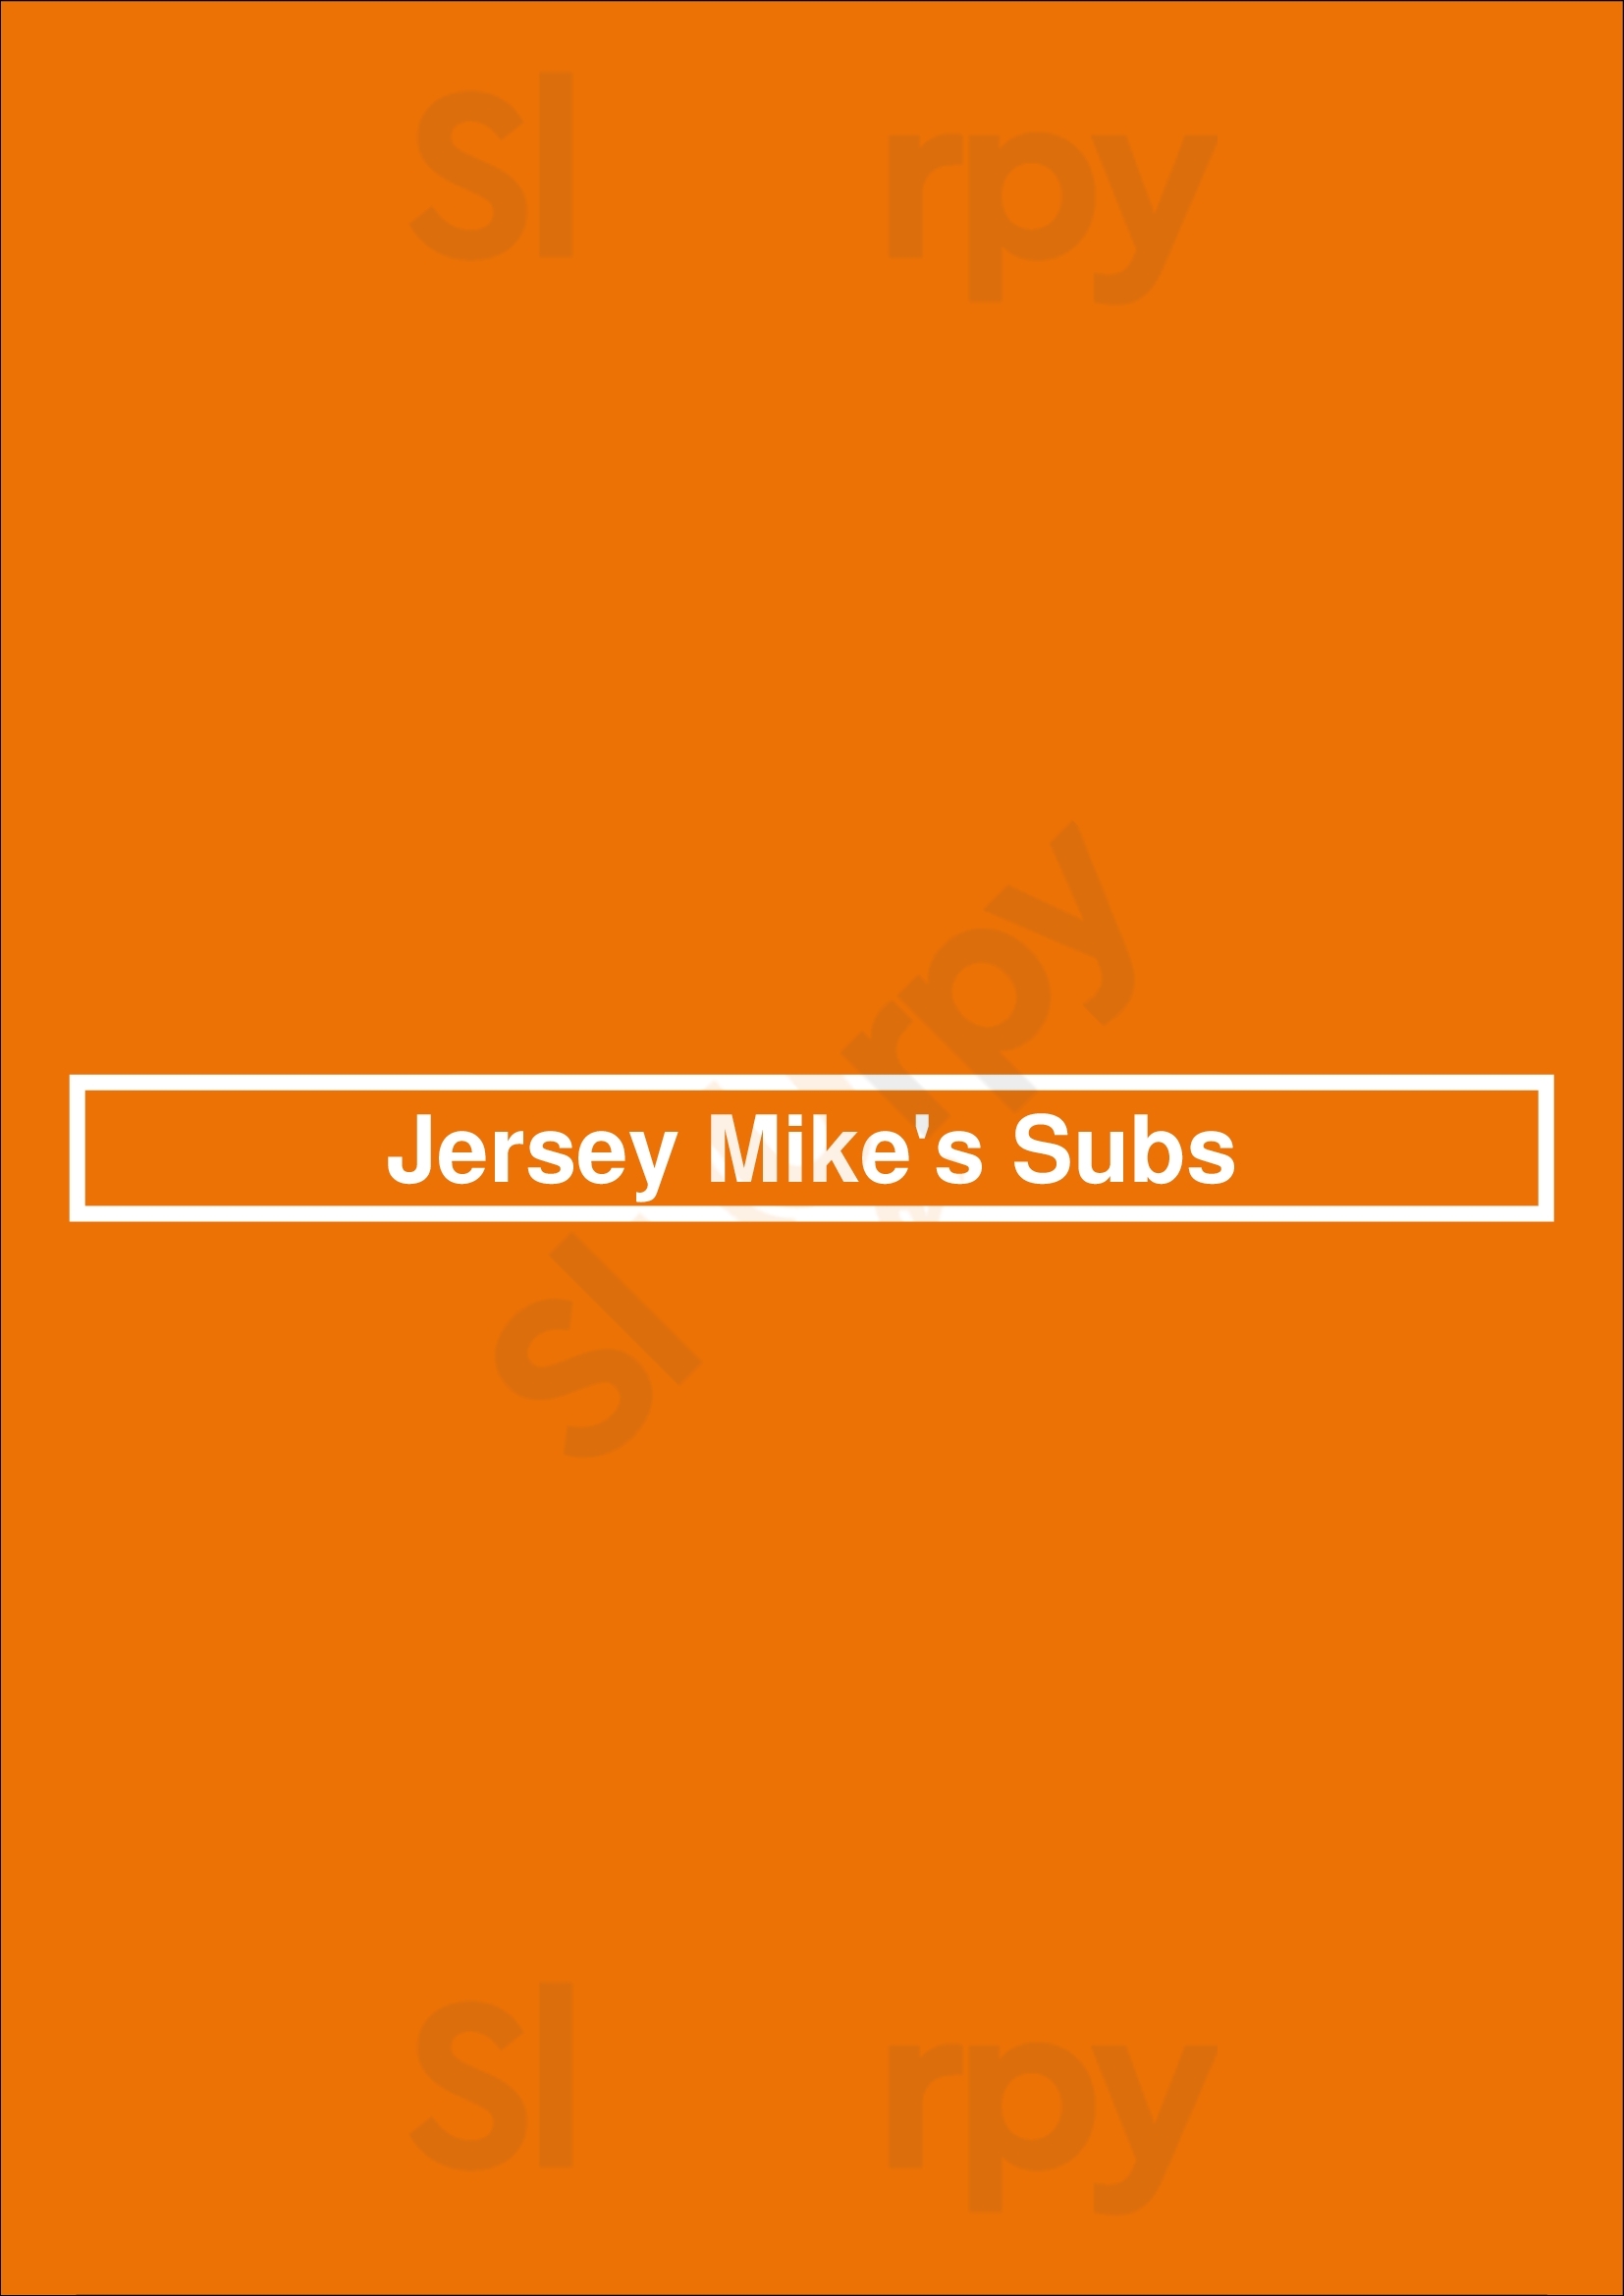 Jersey Mike's Subs Colorado Springs Menu - 1